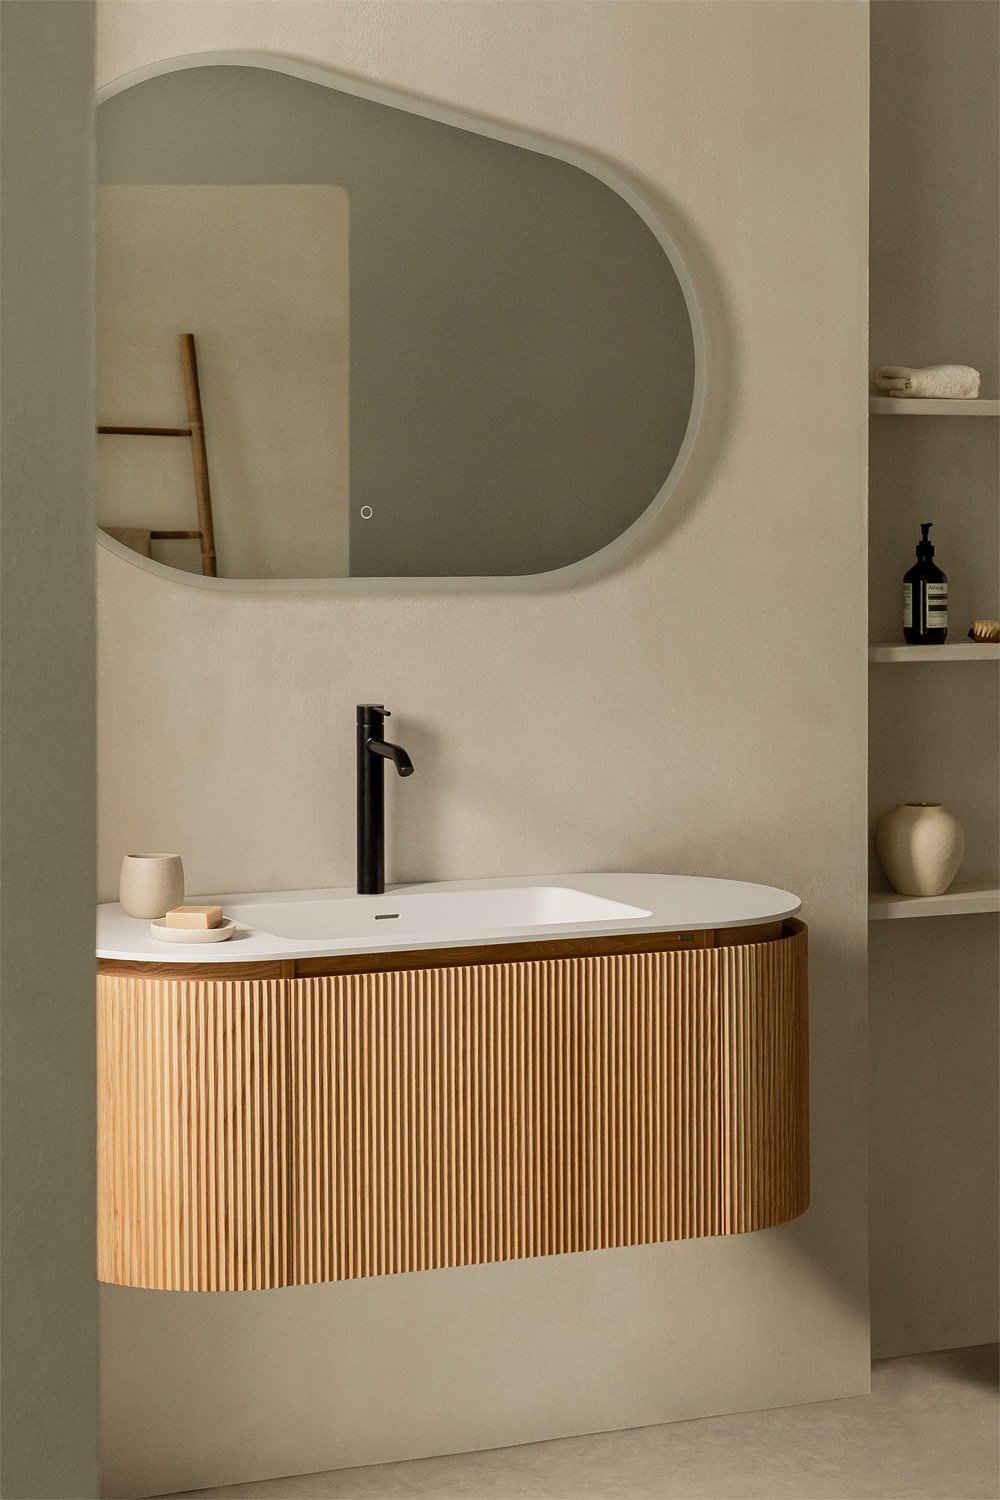 Hangend houten badkamermeubel met geïntegreerde wastafel Carsone, galerij beeld 1